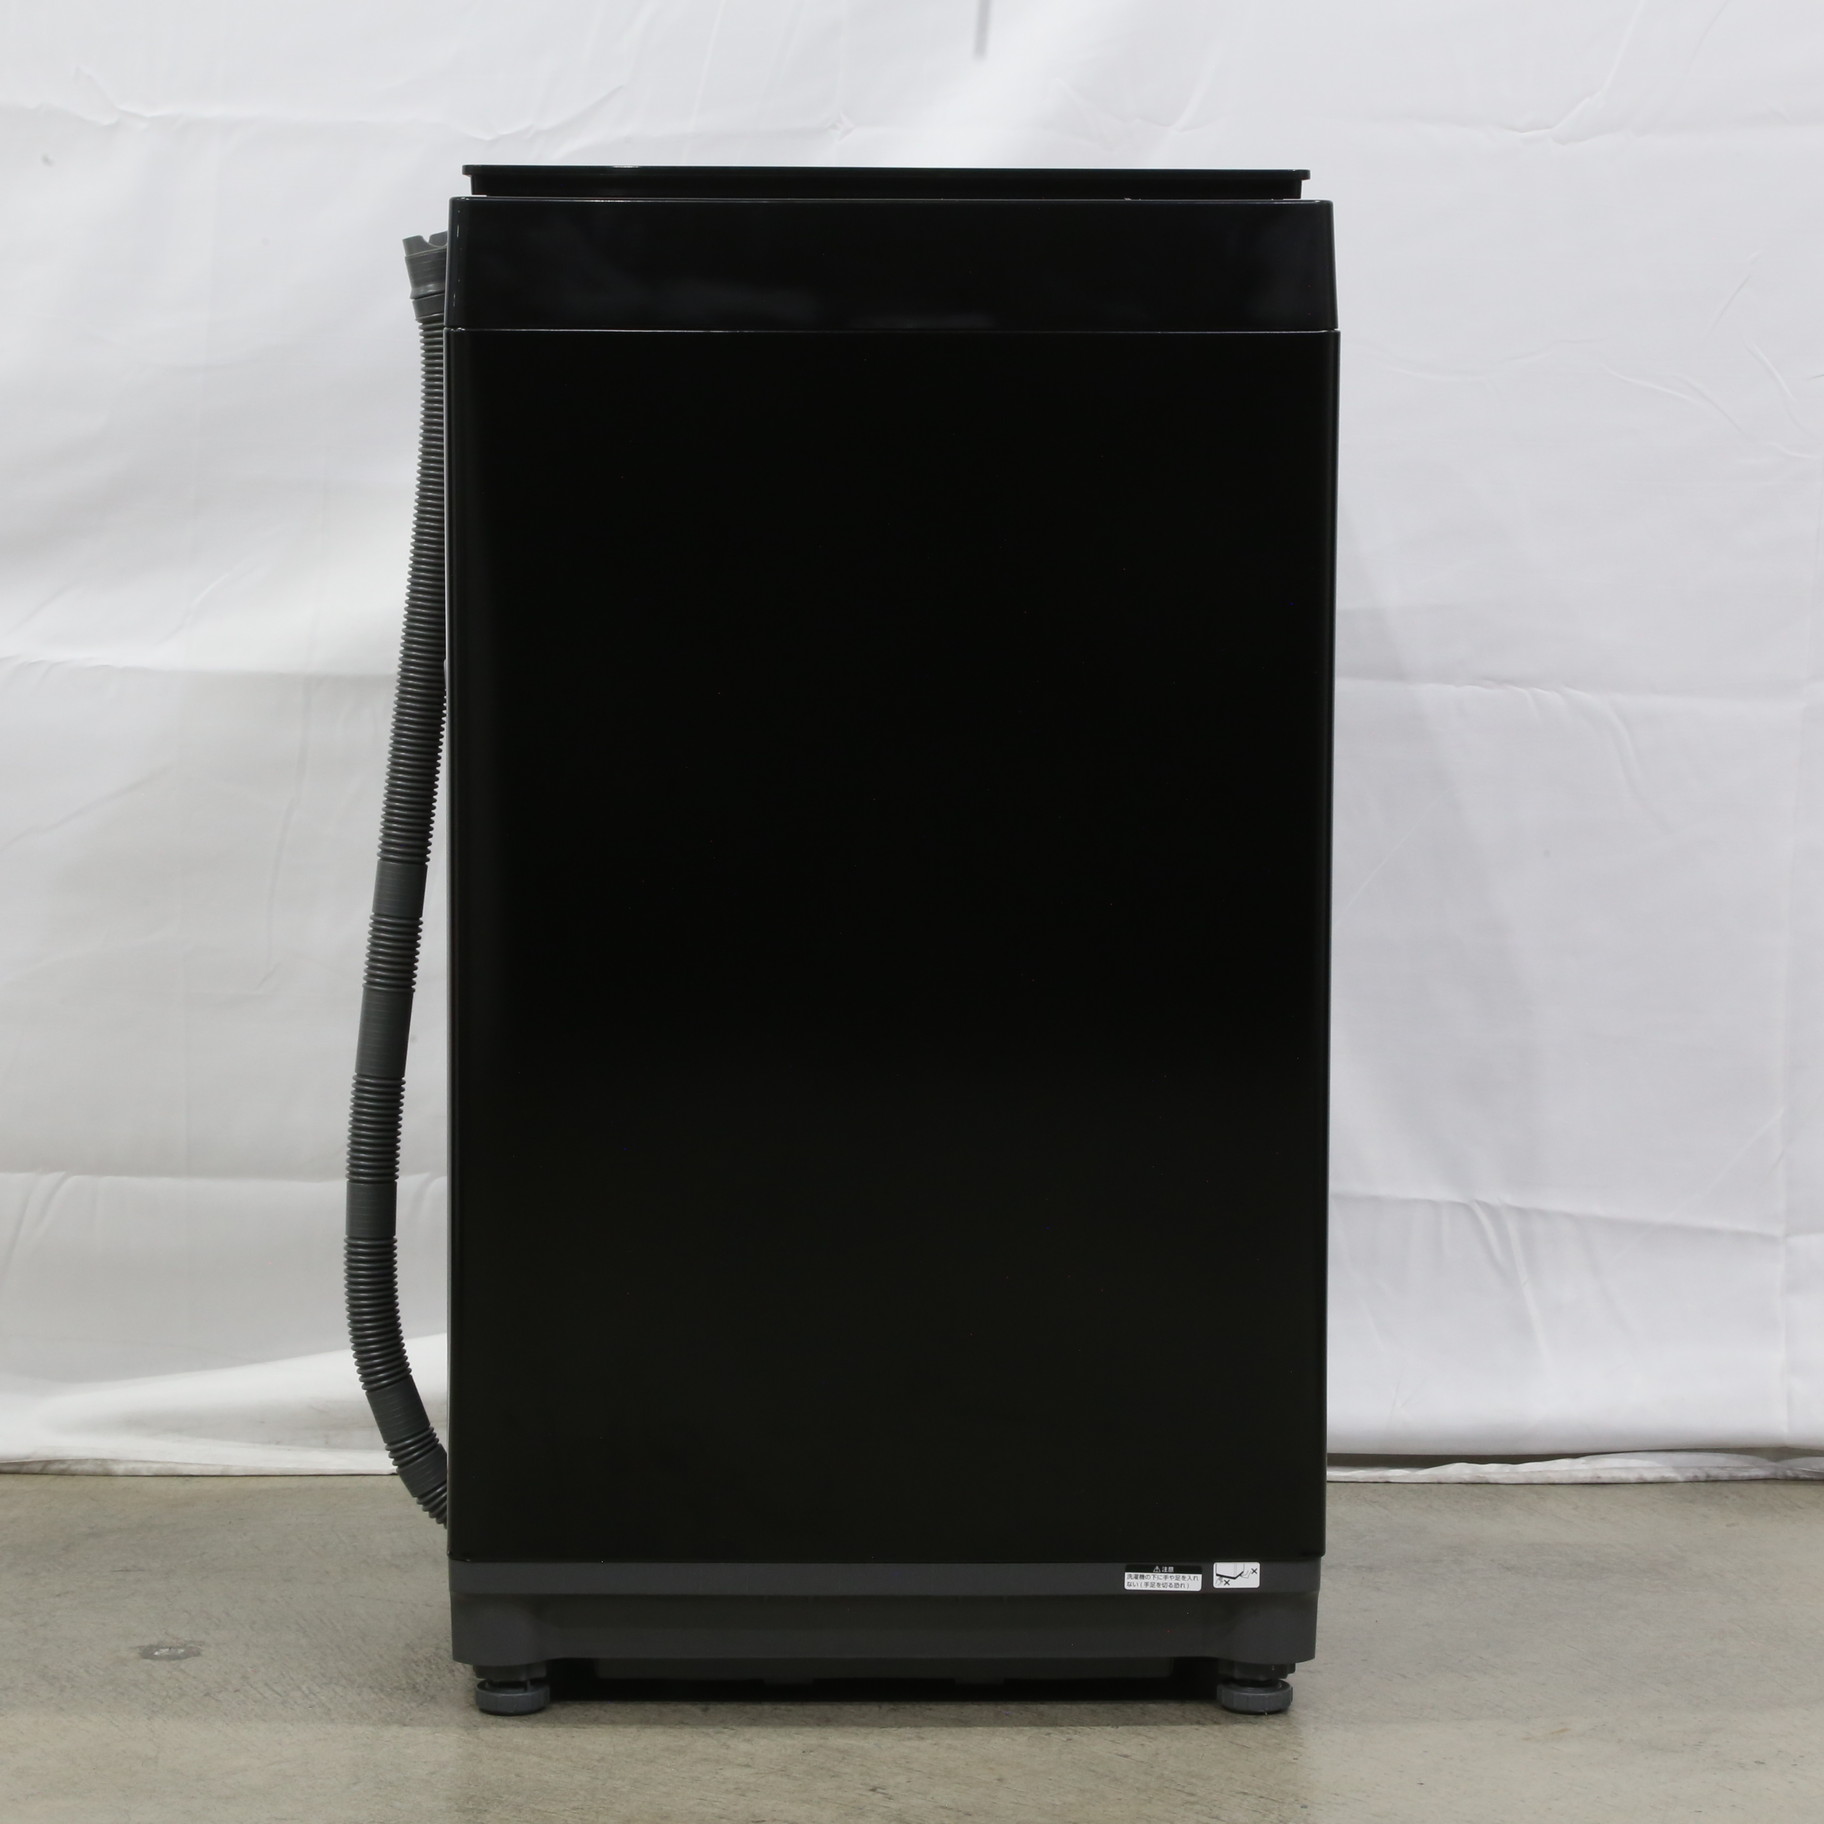 〔展示品〕 全自動電気洗濯機 ブラック WM-ED55B ［洗濯5.5kg ／簡易乾燥(送風機能) ／上開き］